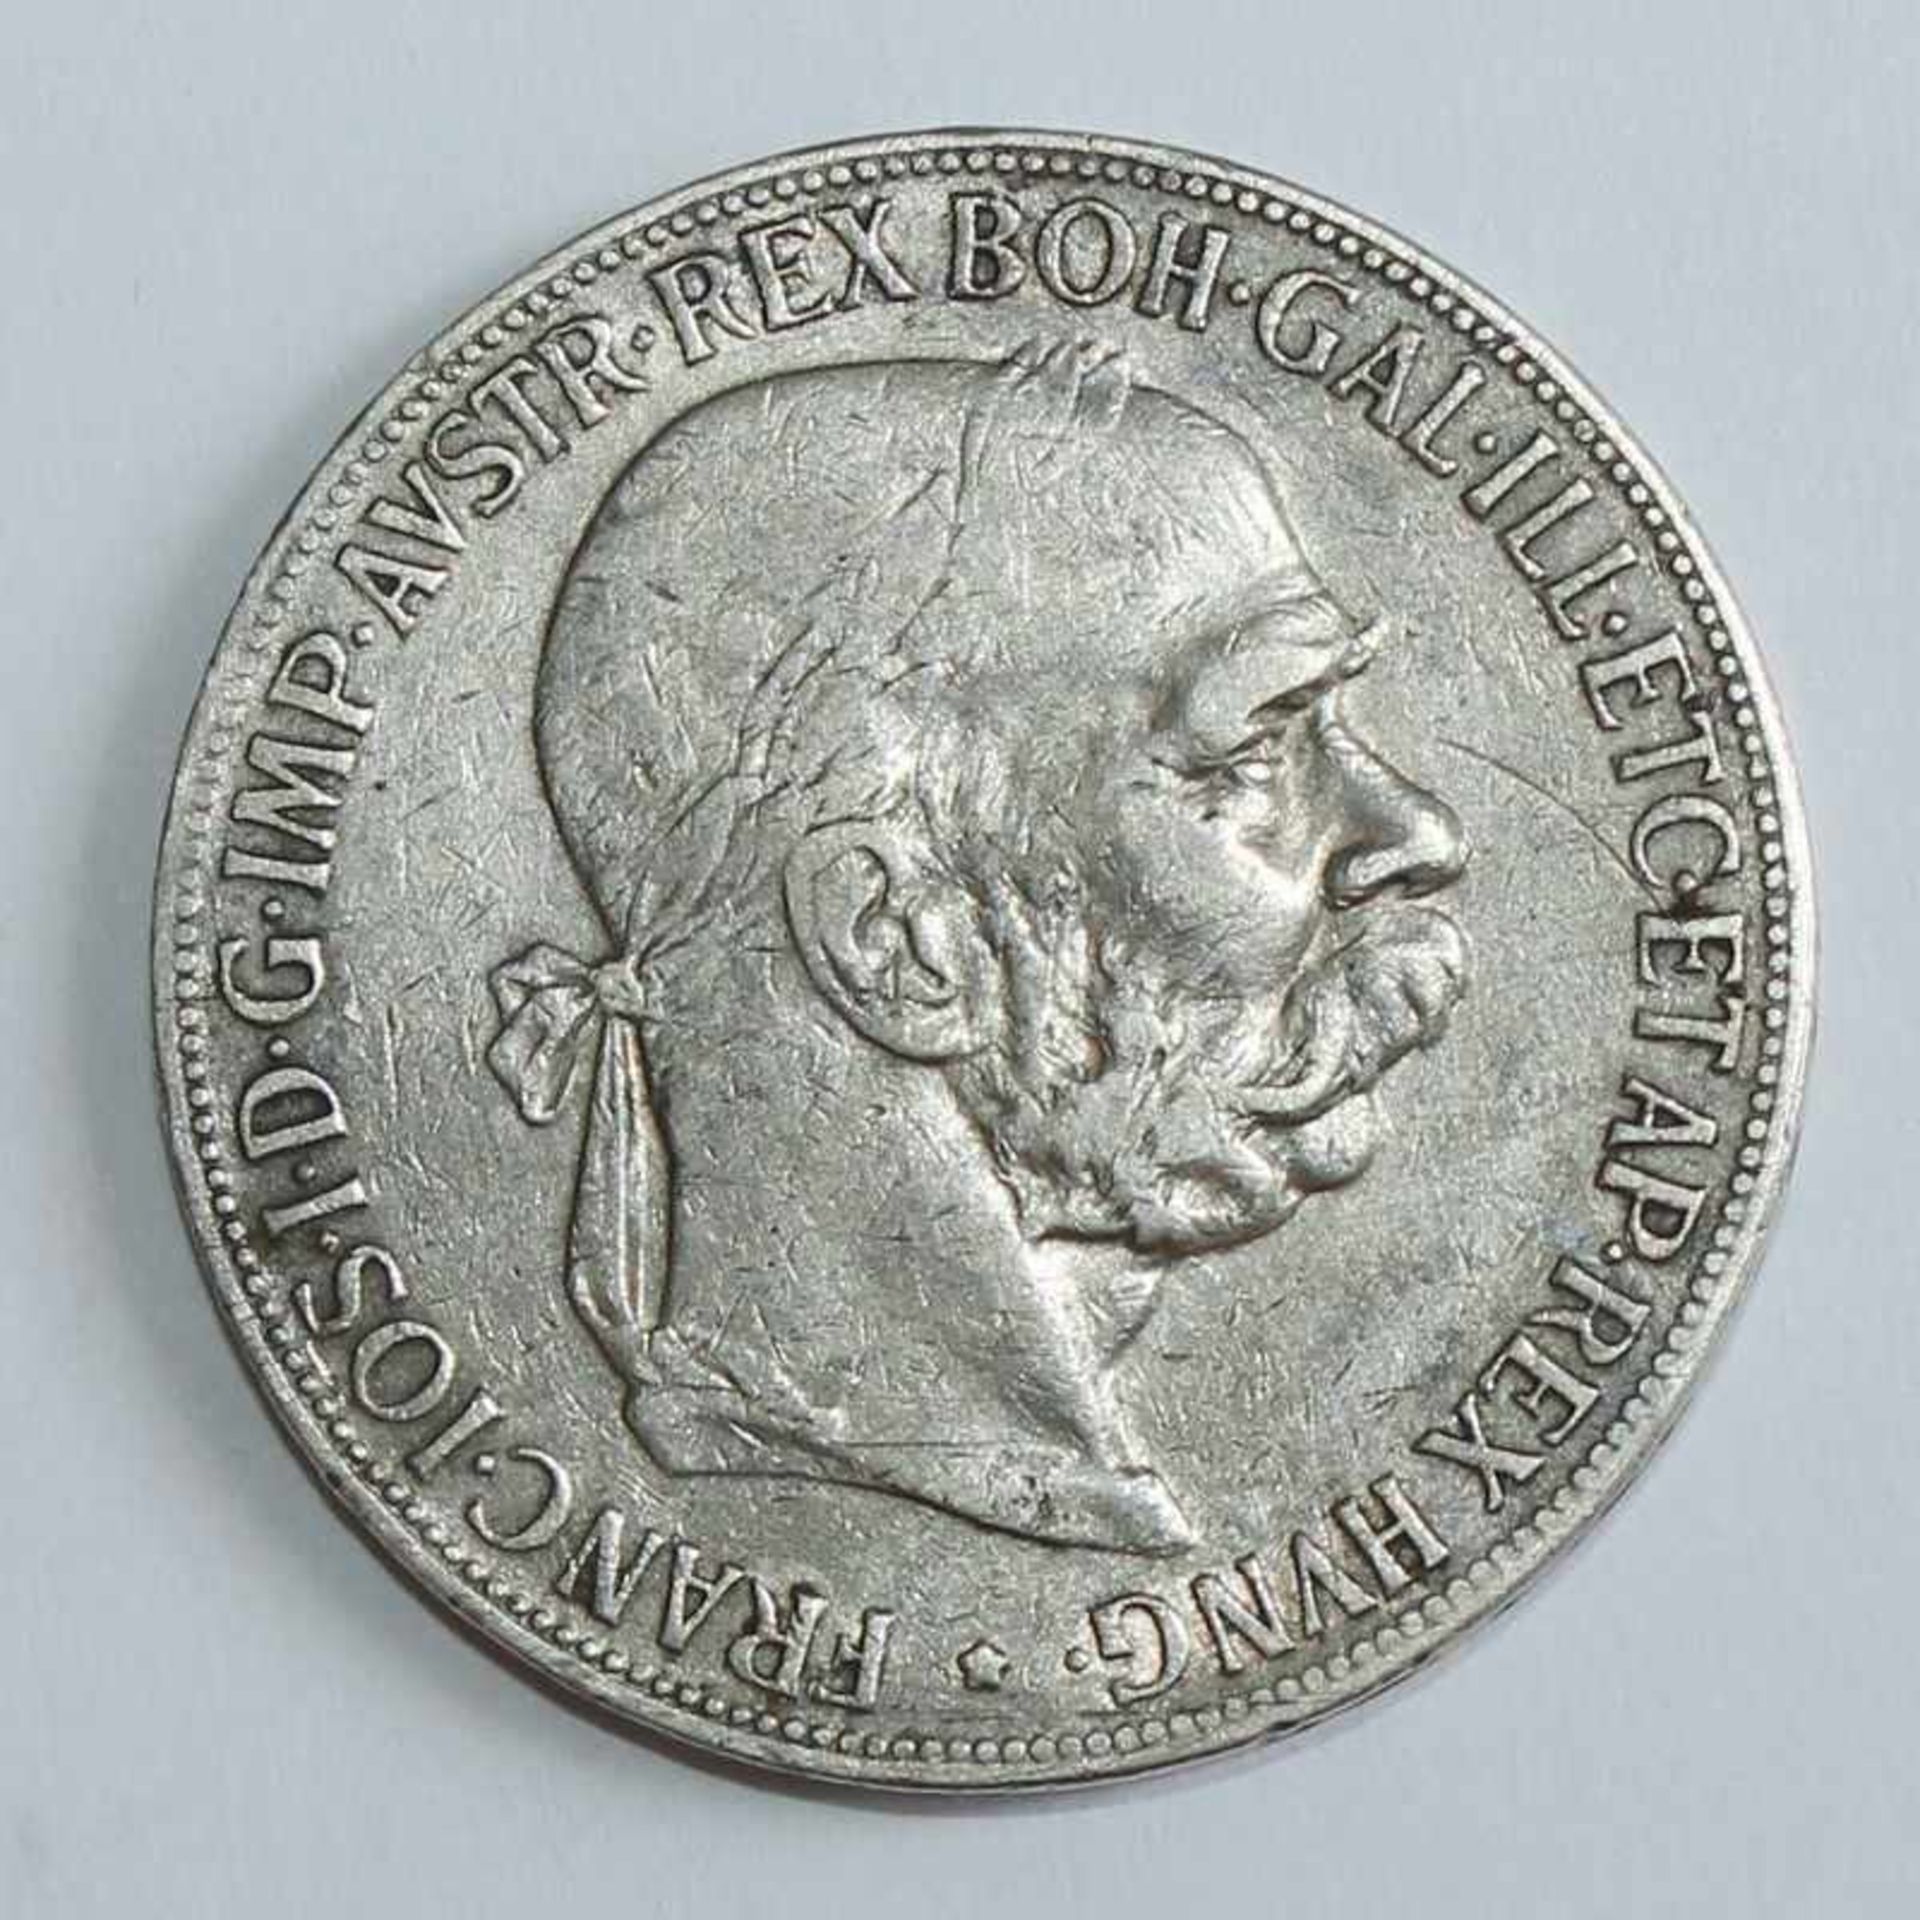 Österreich/Ungarn - 5 Kronen 1900 Si, Kaiser Franz Josef I., D 36mm, G 24g, f.vz